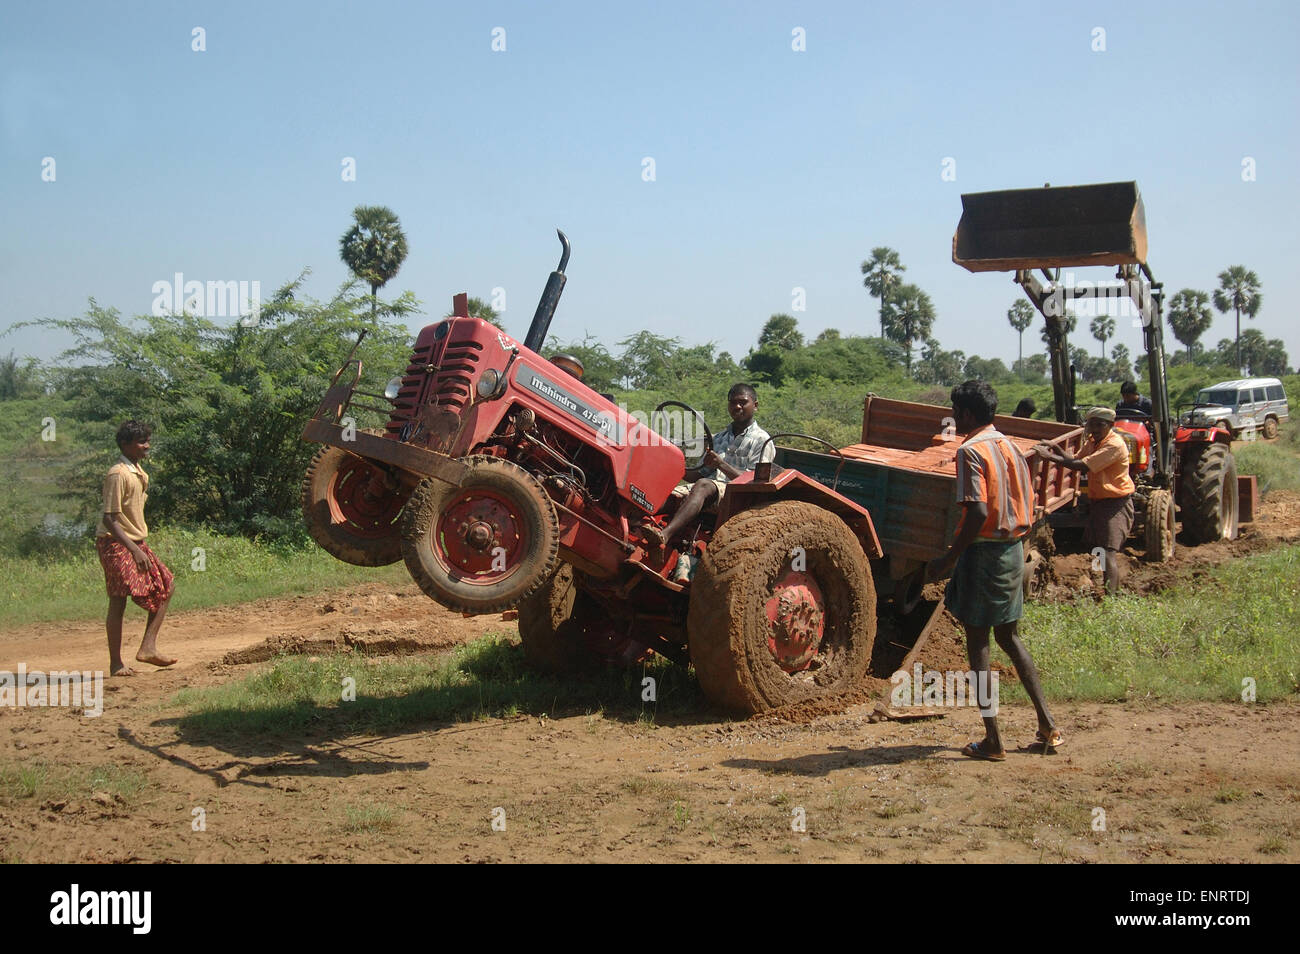 TAMIL Nadu, Inde, circa 2009 : hommes non identifiés pour travailler gratuitement un tracteur embourbé avec un chargement de briques dans la remorque, Banque D'Images